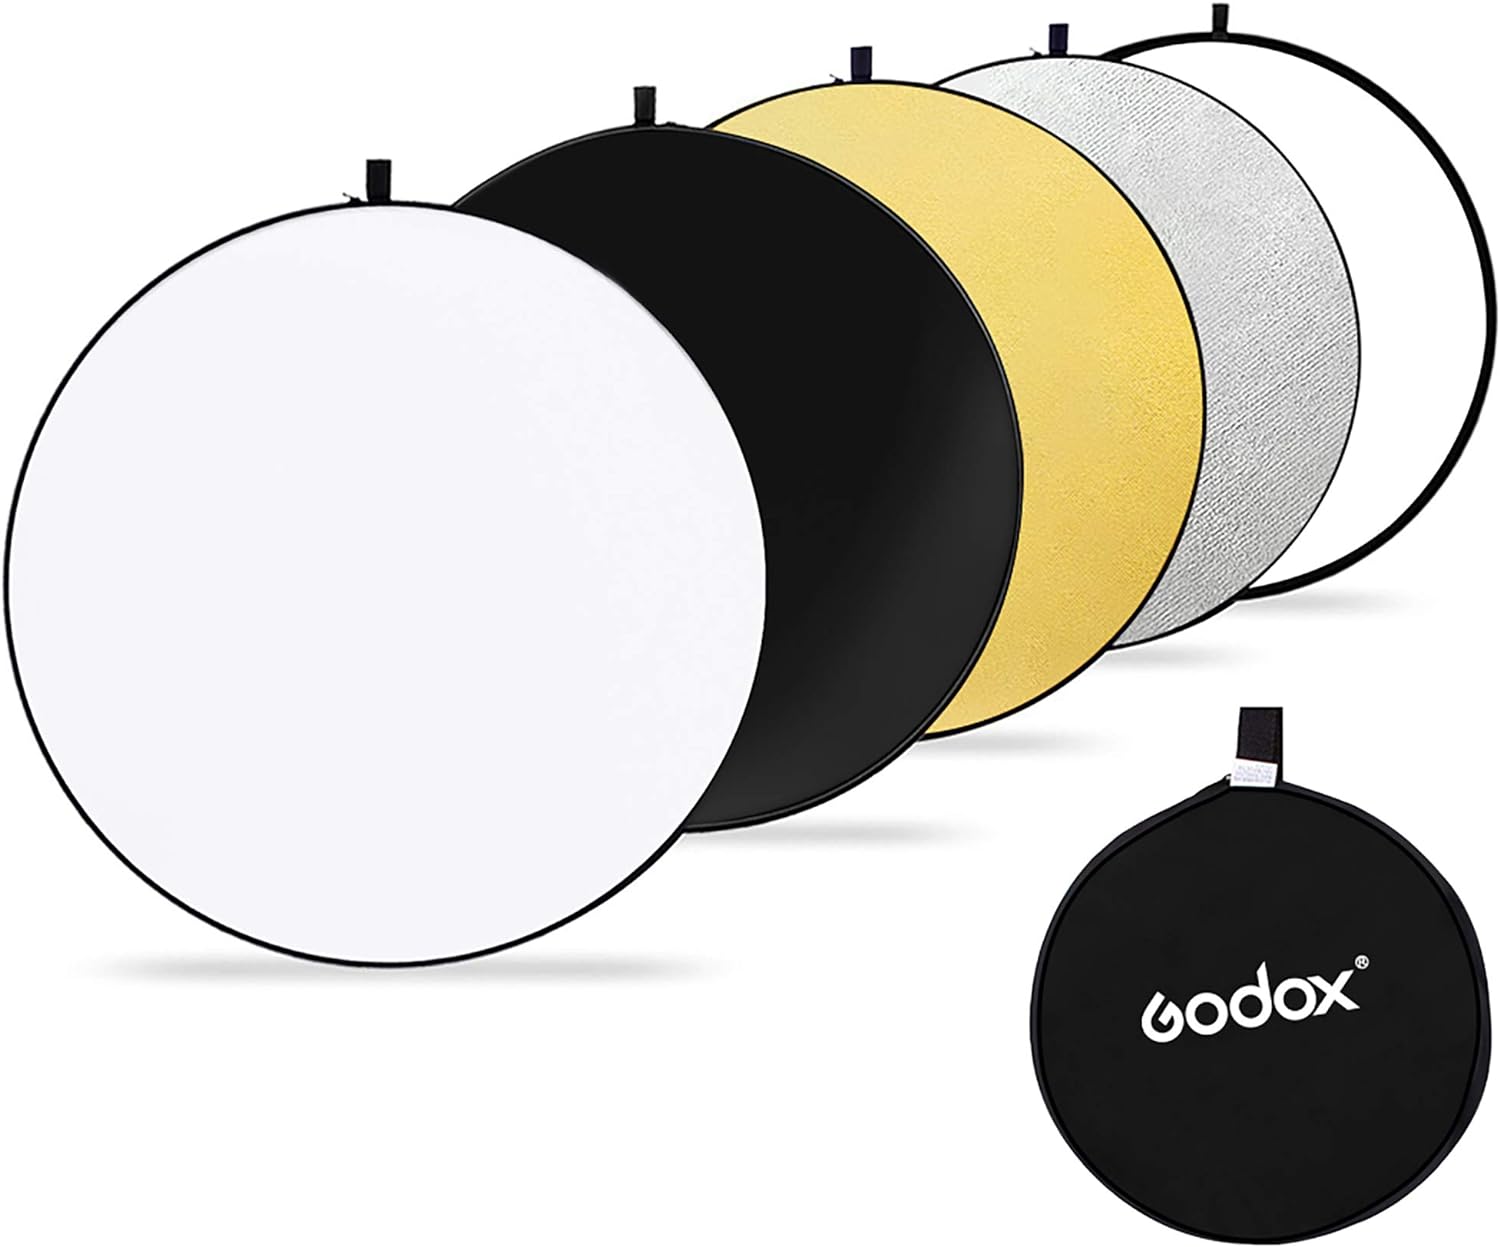 GODOX - Reflector de luz de disco redondo portátil de 80 cm, plegable, con bolsa para estudio y fotografía, color dorado, plateado, negro, blanco, translúcido.